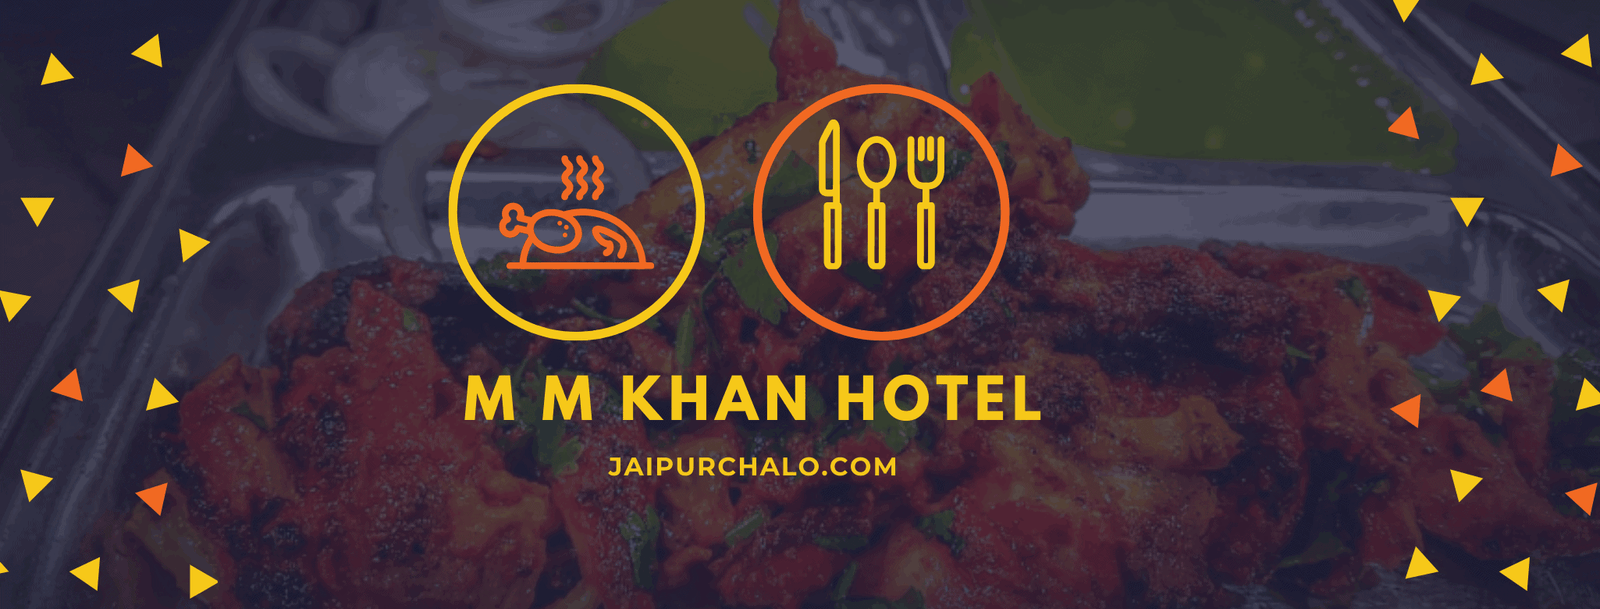 M M Khan Hotel Jaipur